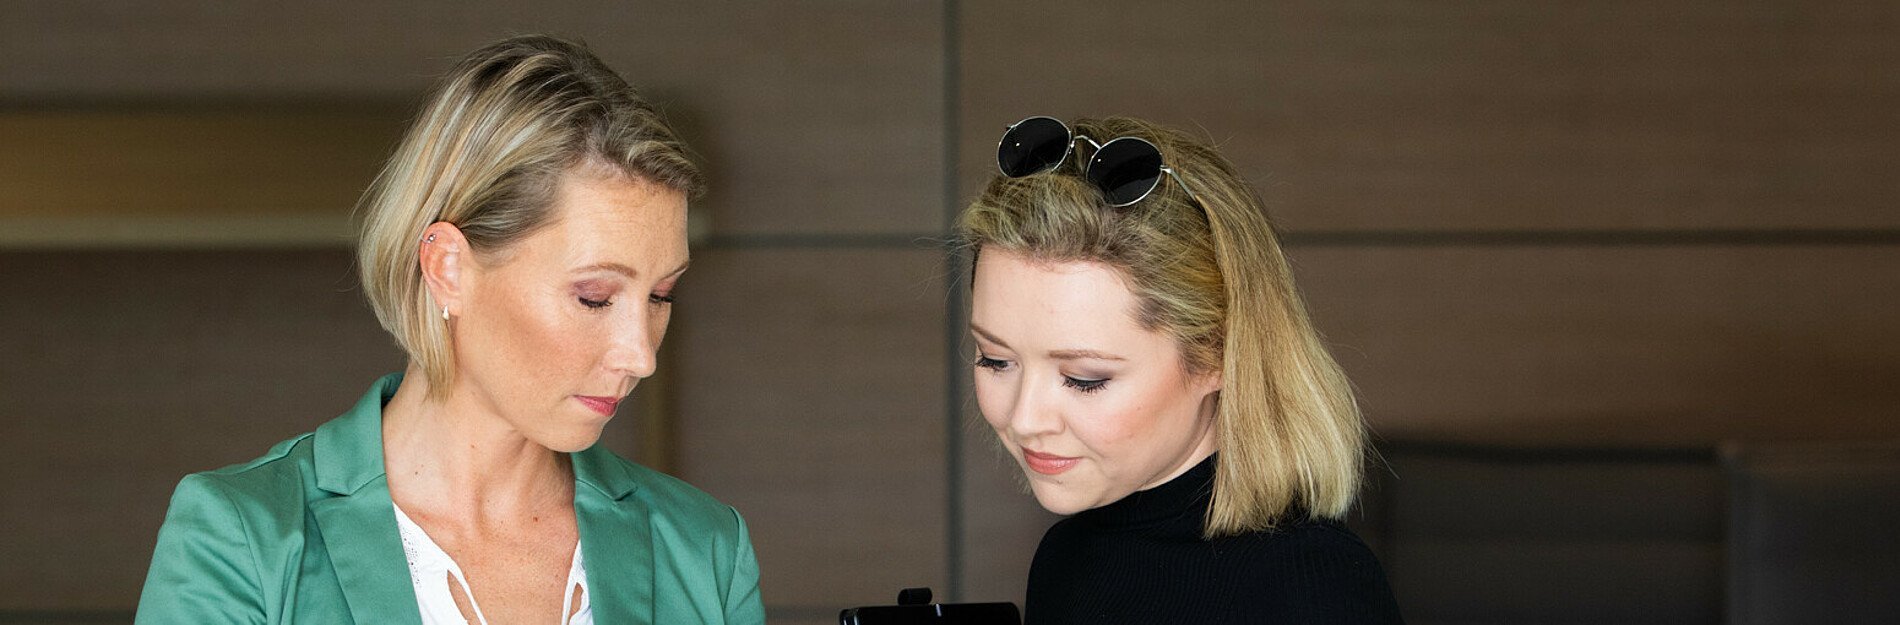 Anna Stock-Zschernig tauscht sich mit Ihrer Mitarbeiterin Alina Klunt am Tablet aus